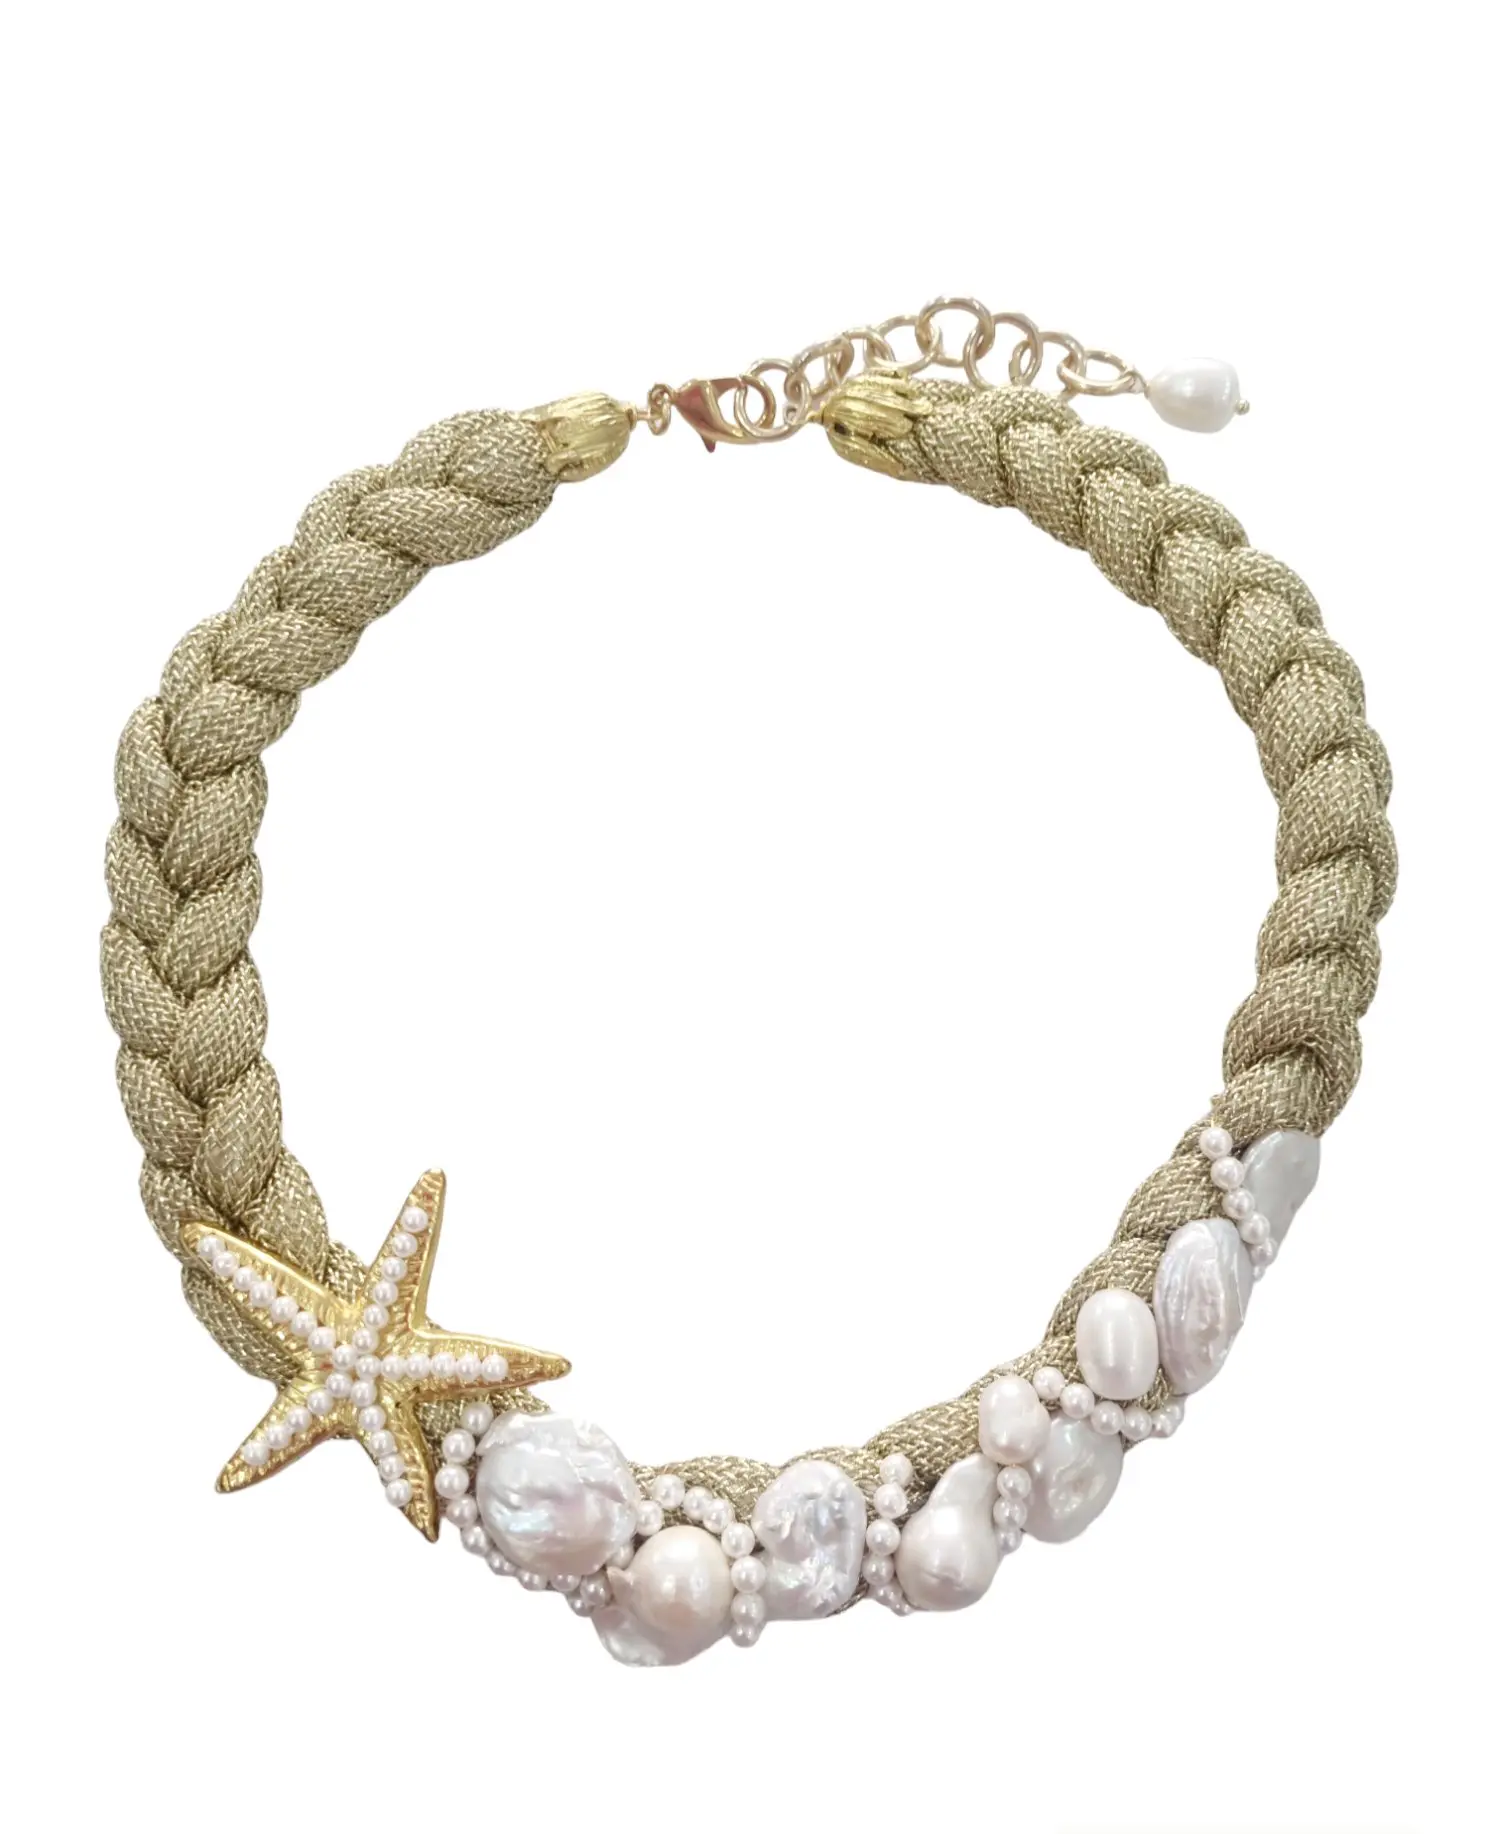 Collana girocollo reagolabile realizzata artigianalmente con cordone dorato laminato intrecciato,perle scaramazze,perle barocche,perle di maiorca e stella in ottone.